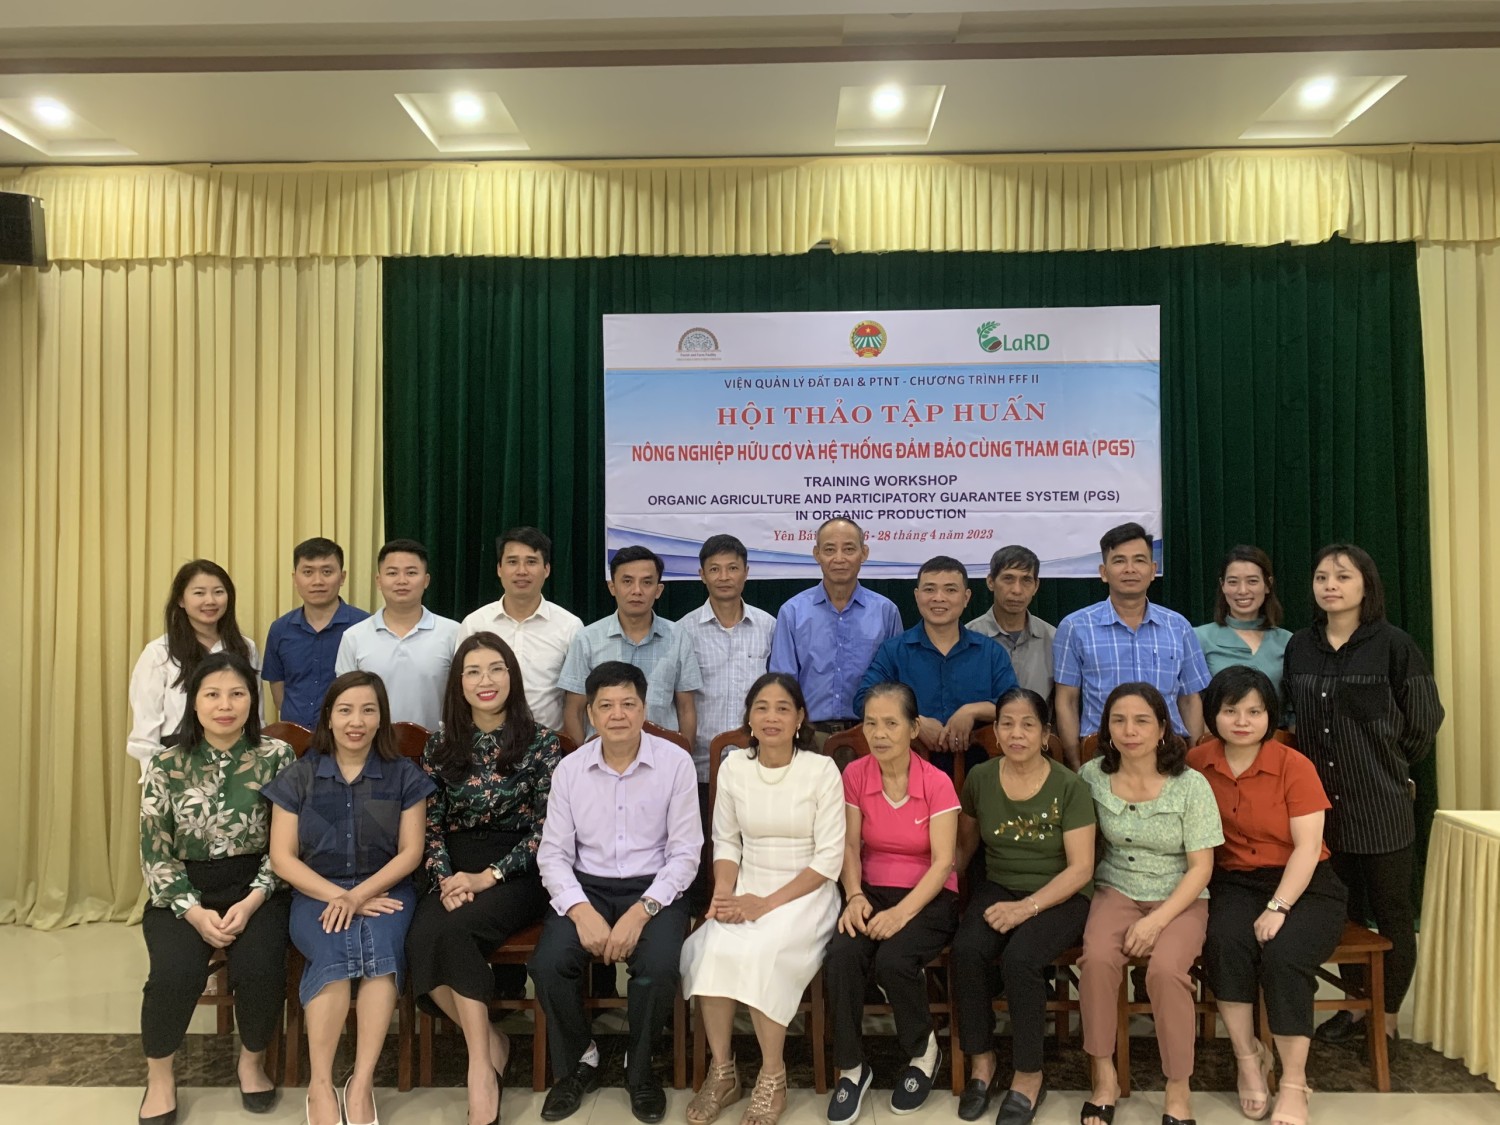 Hội thảo tập huấn Nông nghiệp hữu cơ và Hệ thống đảm bảo cùng tham gia (PGS) tại tỉnh Yên Bai - Training on Organic agriculture and Participatory guarantee system (PGS) in Yen Bái Province